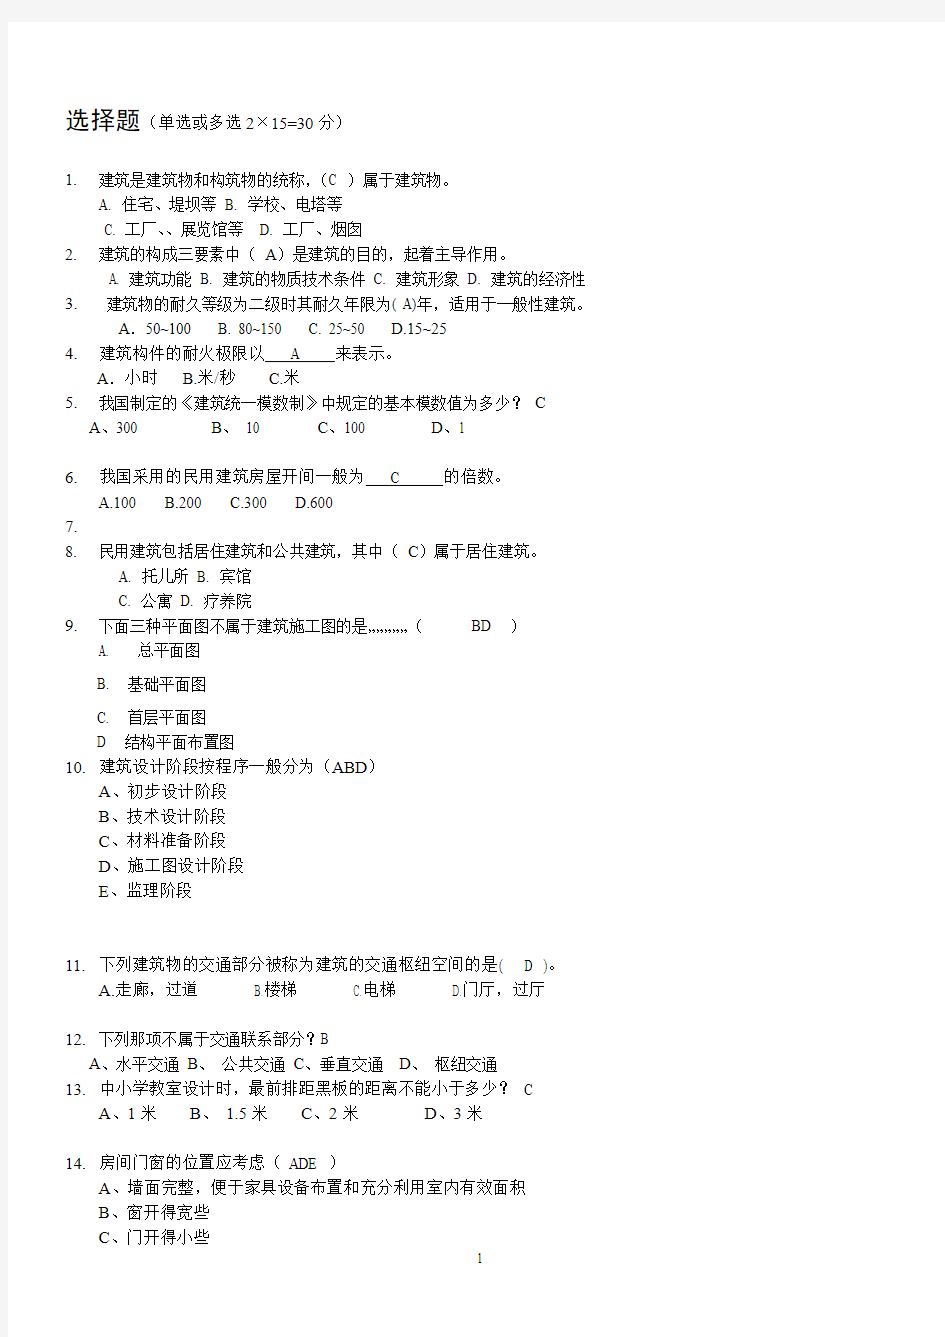 武汉科技大学房屋建筑学复习试题集2010-1